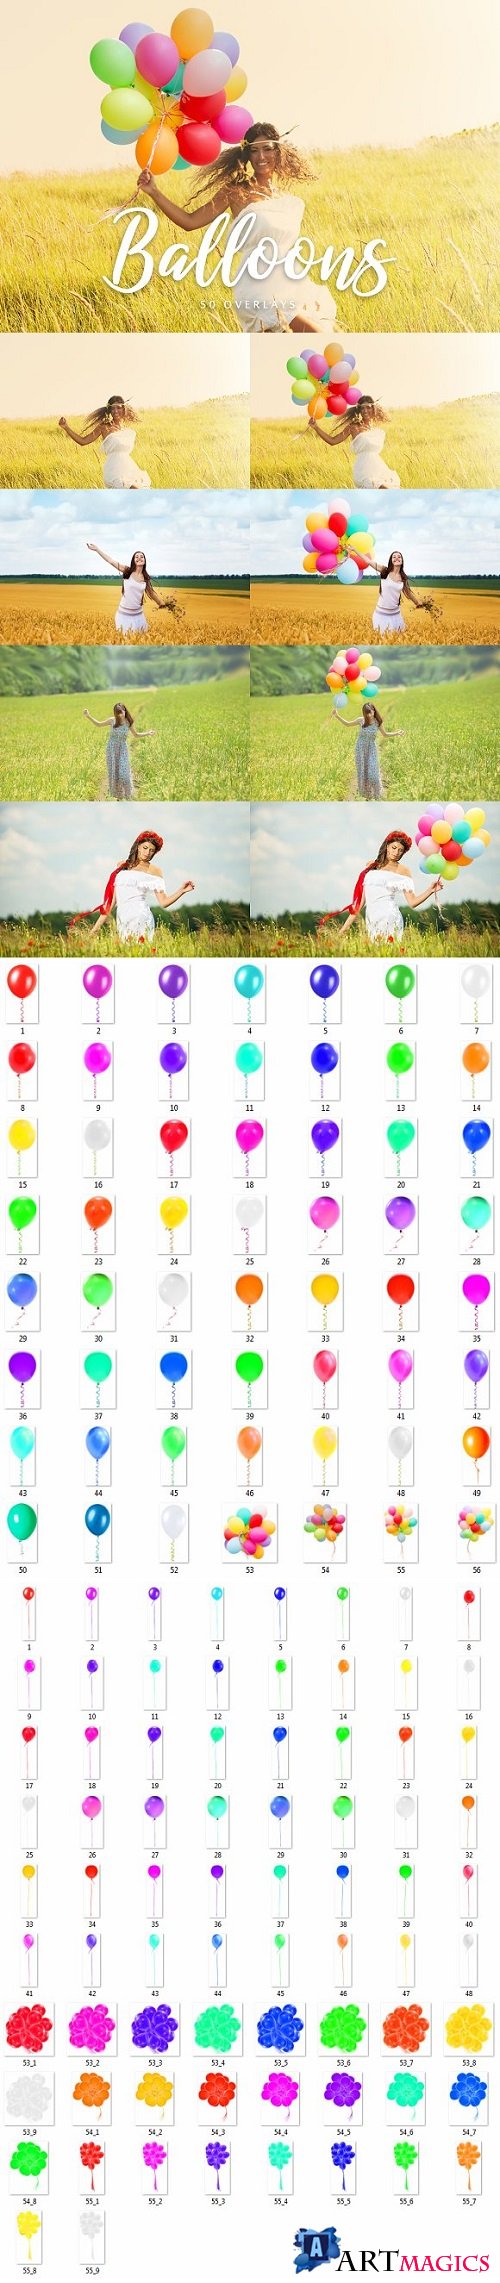 Balloons Overlays - 50 Overlays 2002064